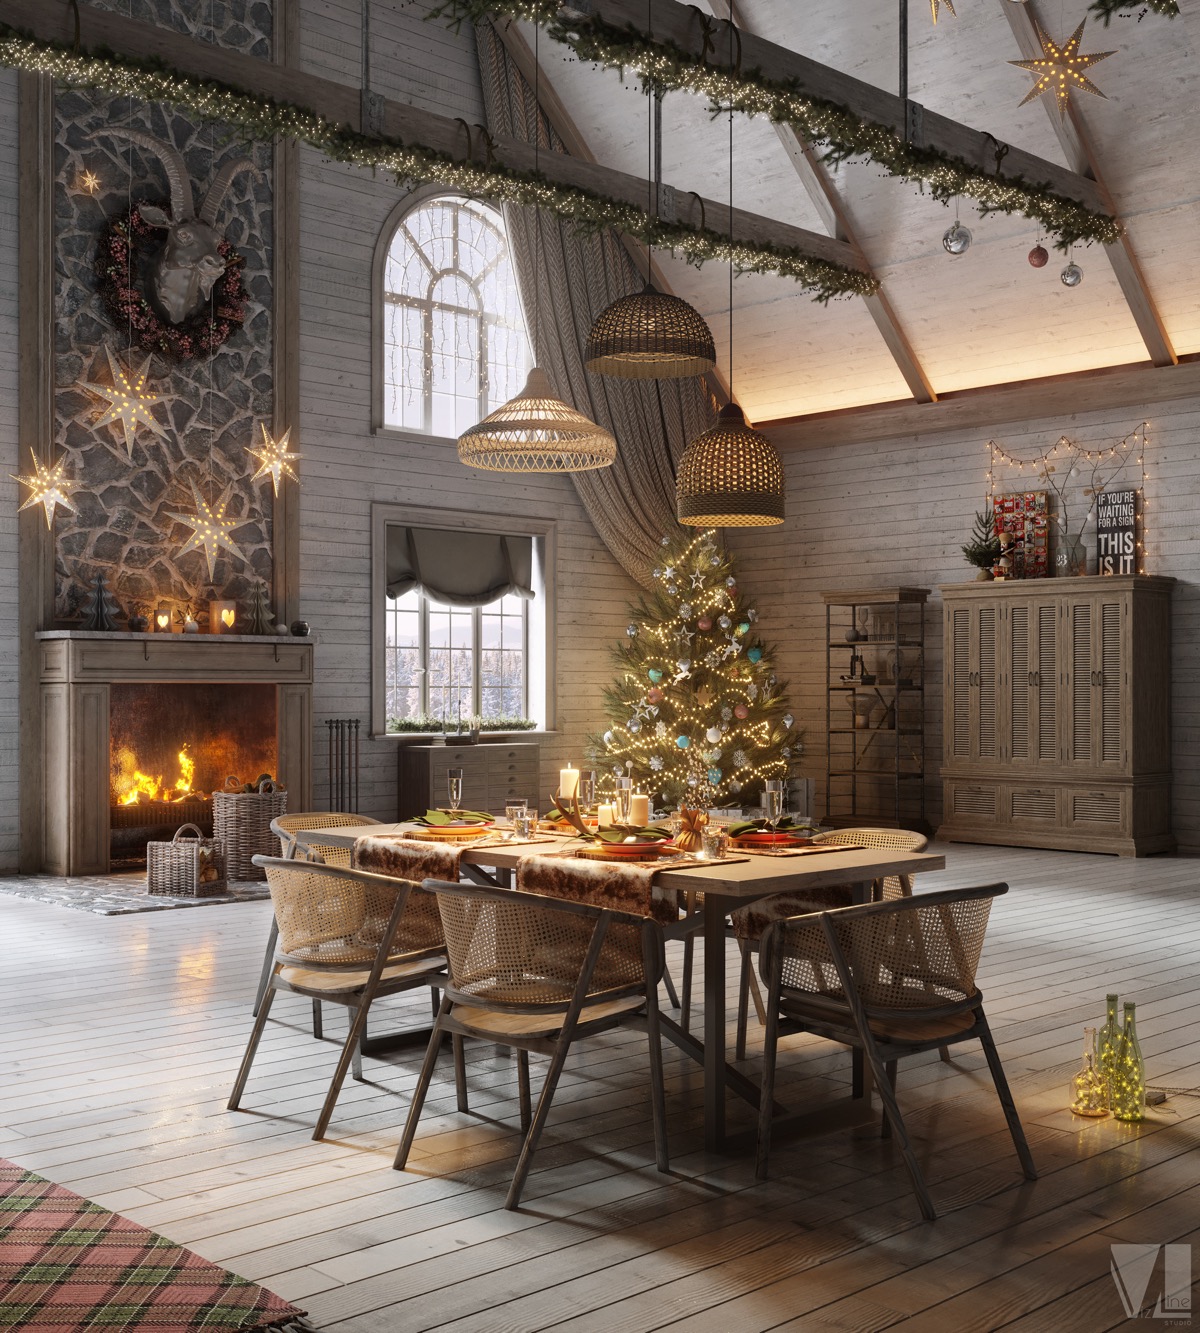 Deseando a todos los lectores de Home Design una muy feliz Navidad y fiestas